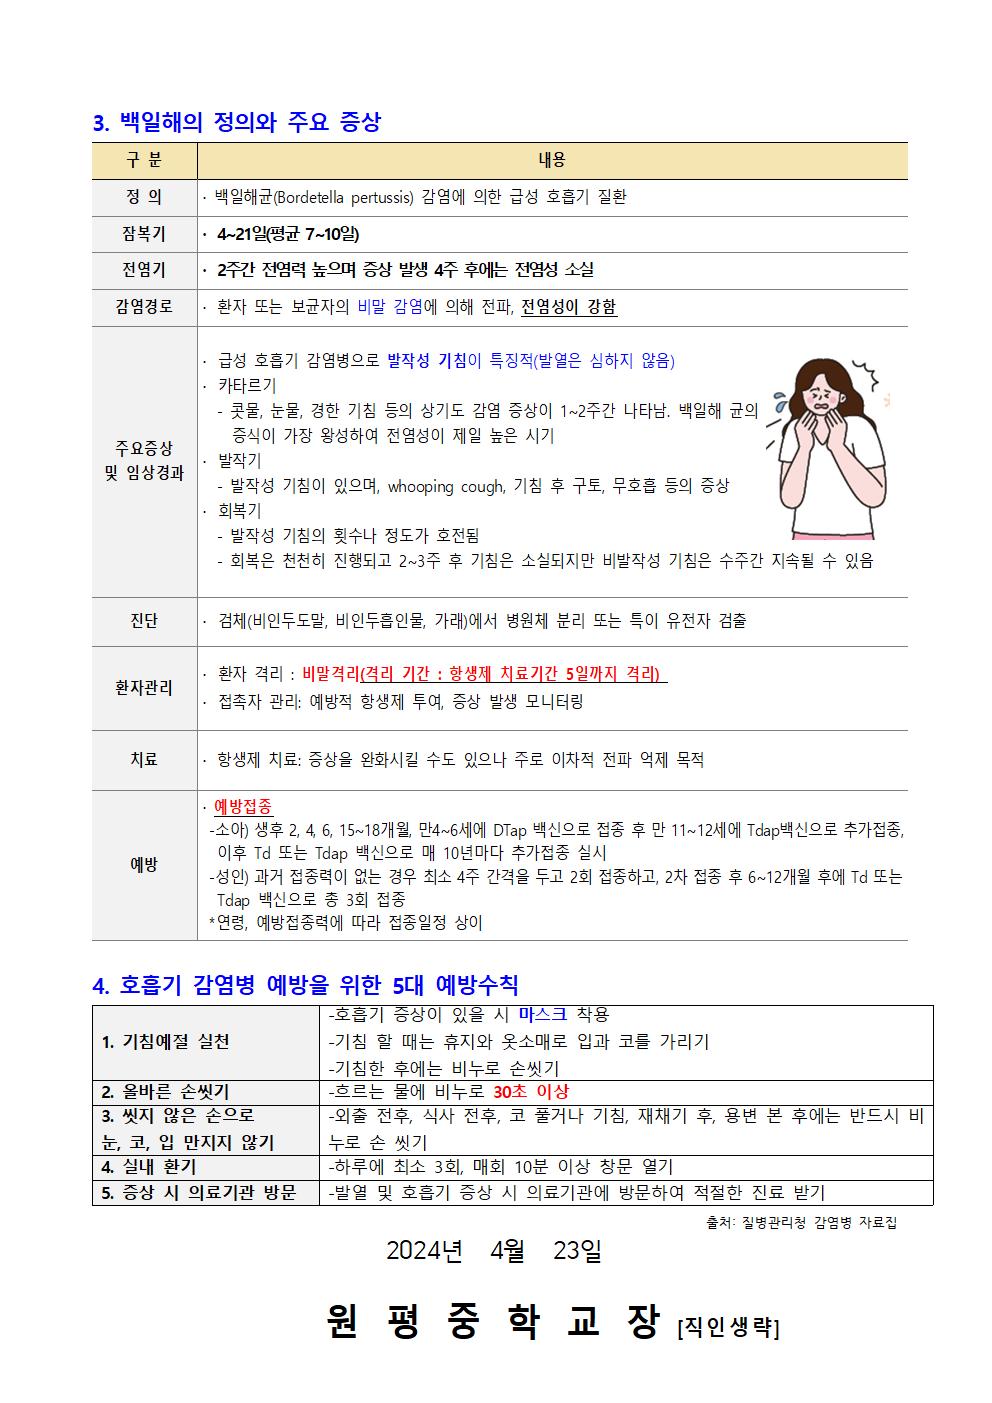 홍역 백일해 예방 안내 가정통신문002